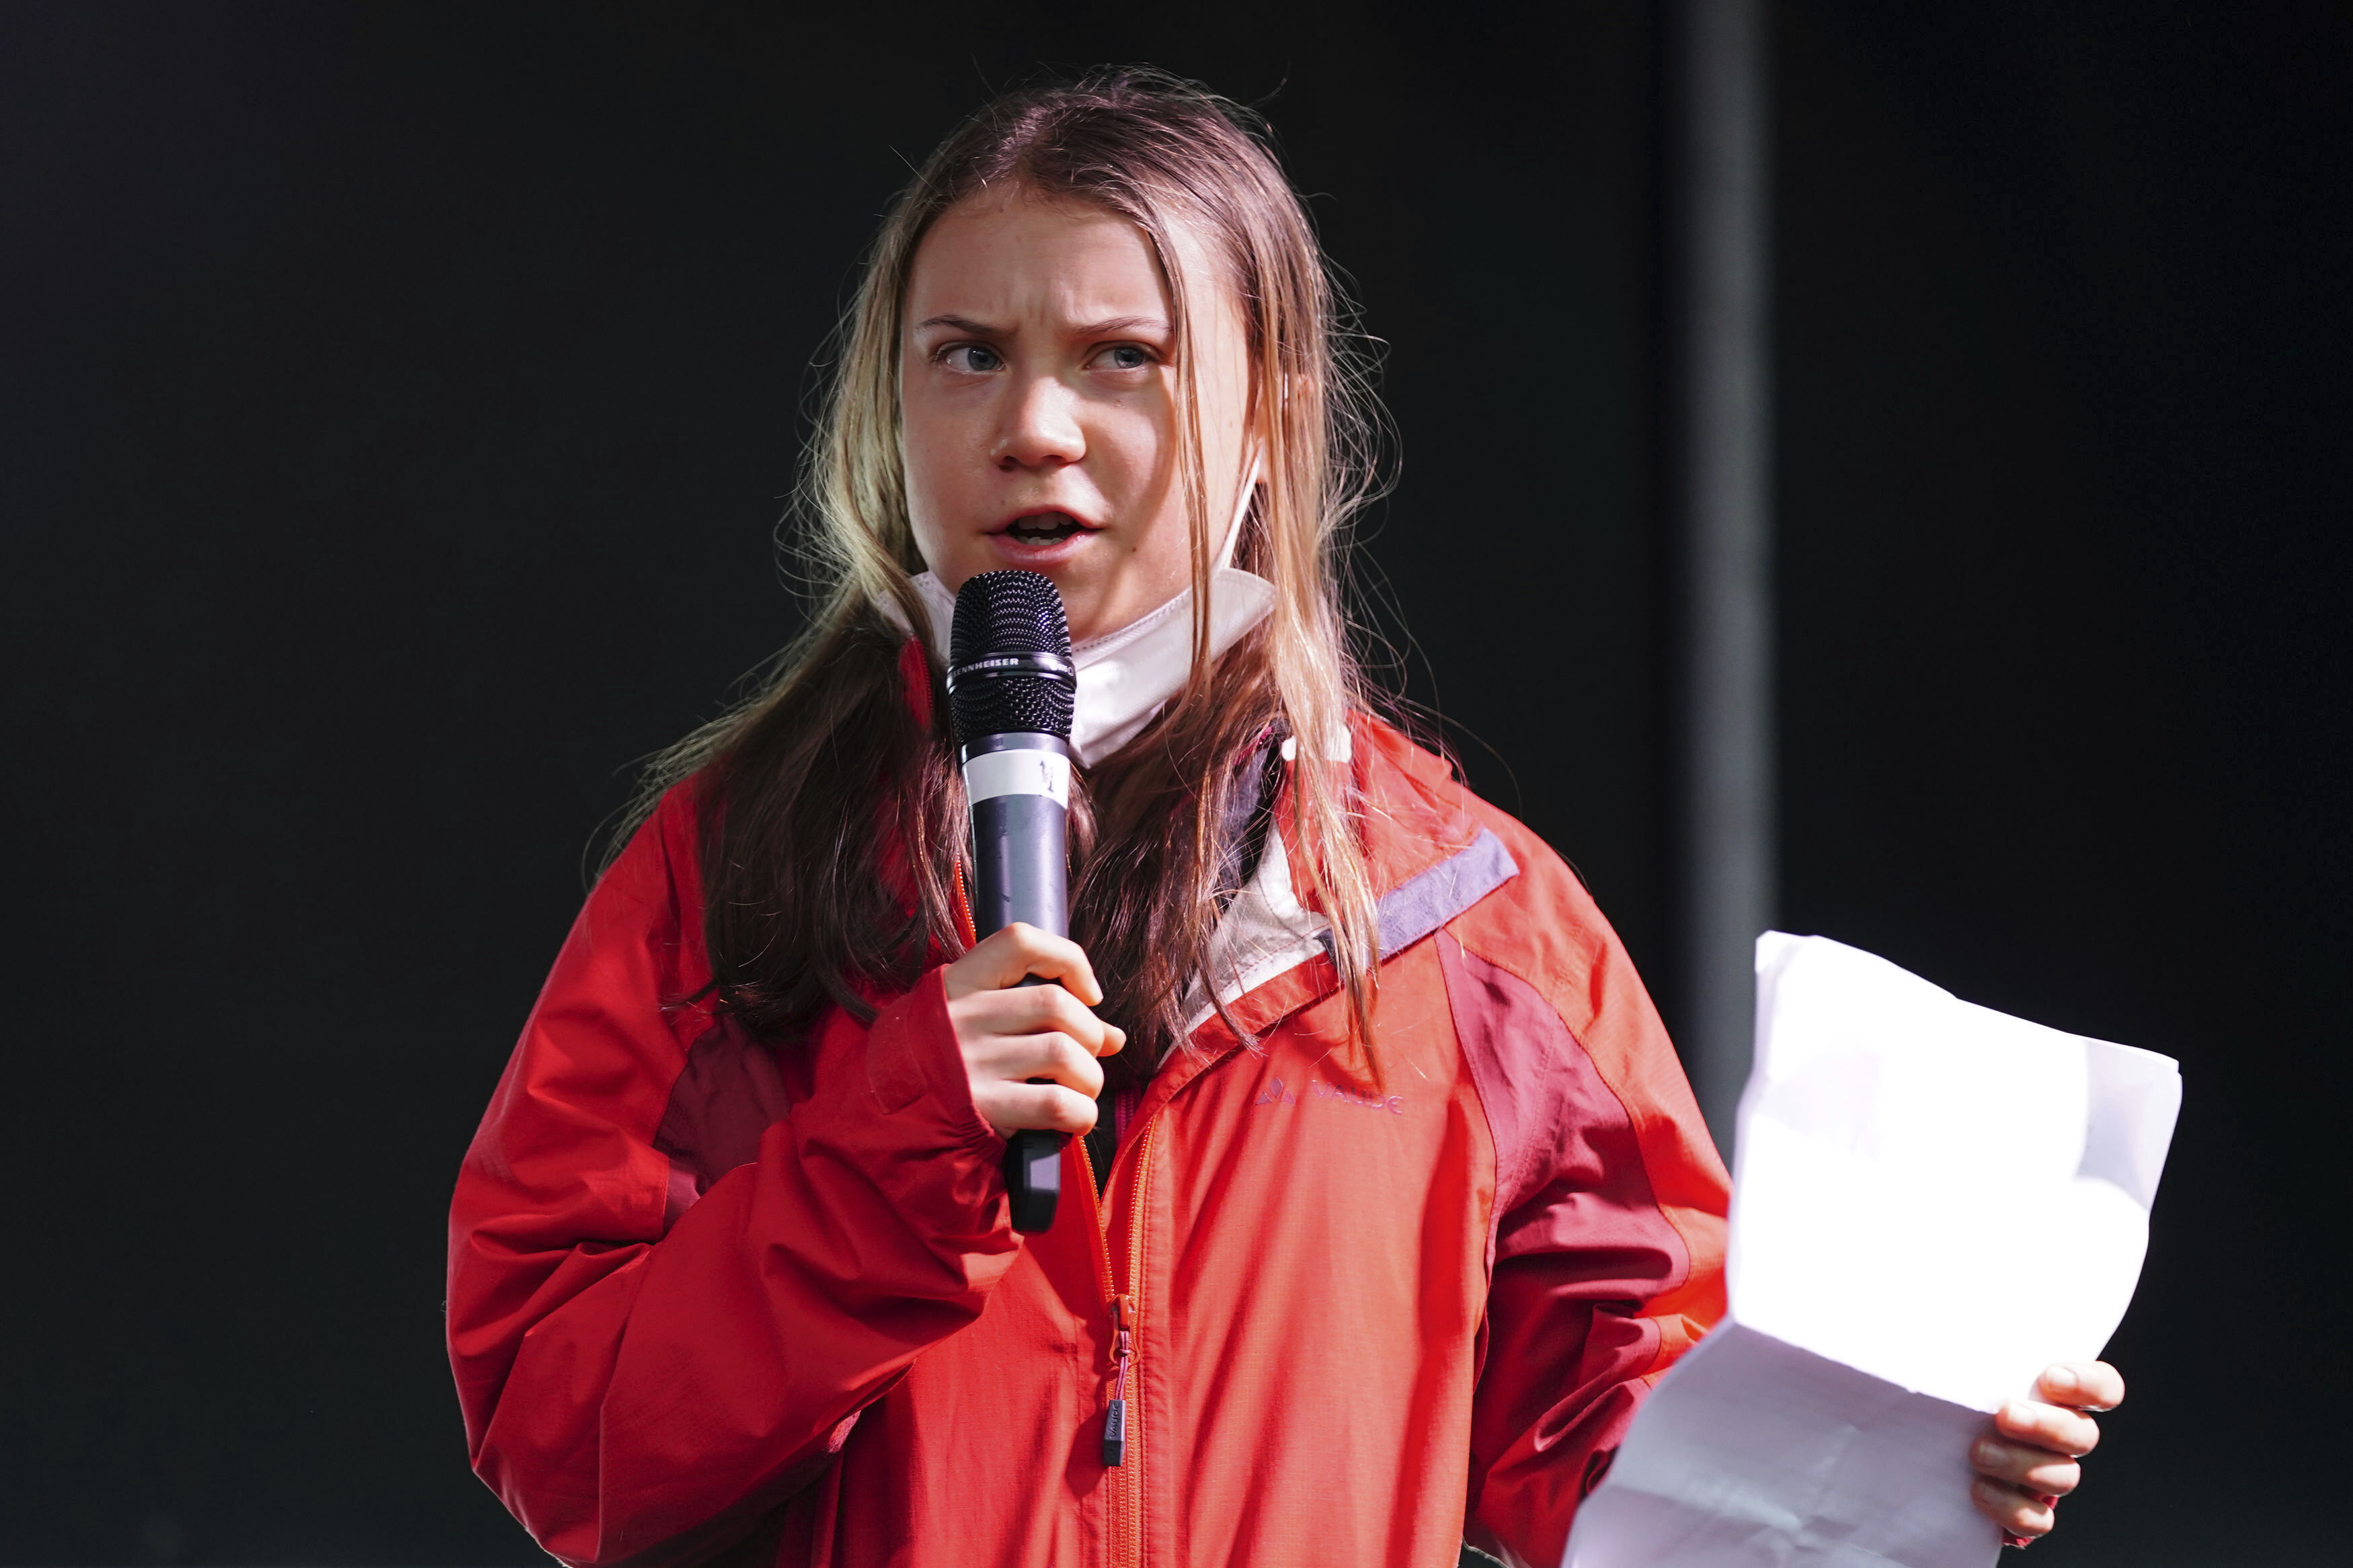 Klimaaktivisten Greta Thunberg langer ut mot klimatoppmøtet COP26 og kaller det for en fiasko selv om møtet bare er halvveis. Foto: AP / NTB